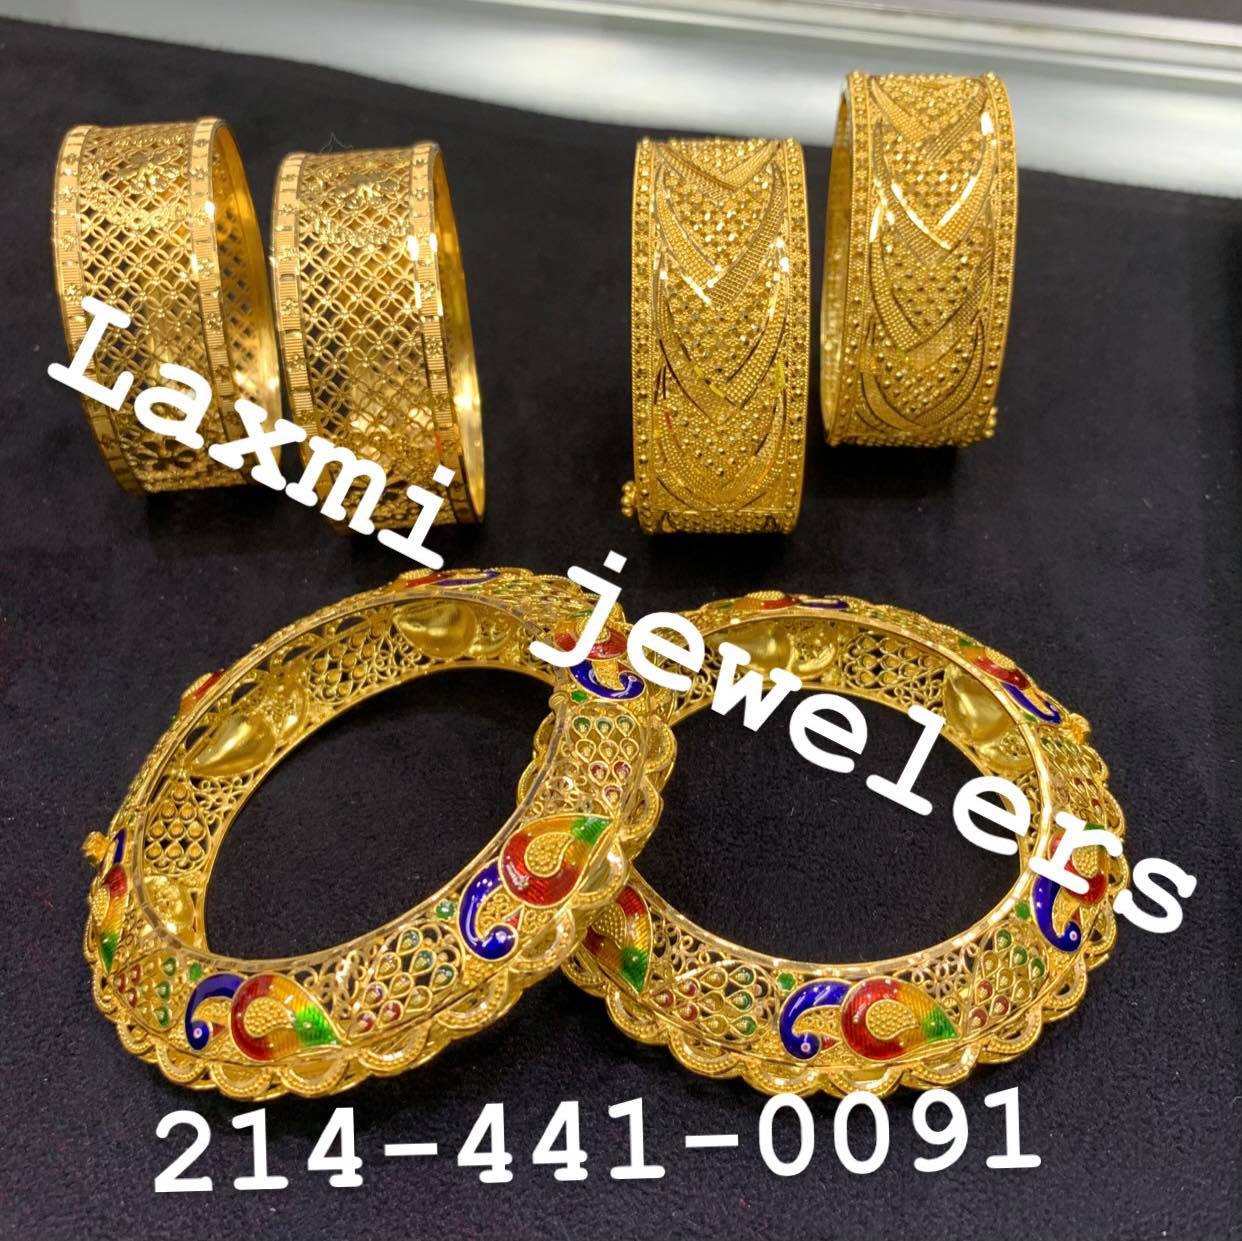 Laxmi Jewelers (Nepali / South Asian Jewelry Store)